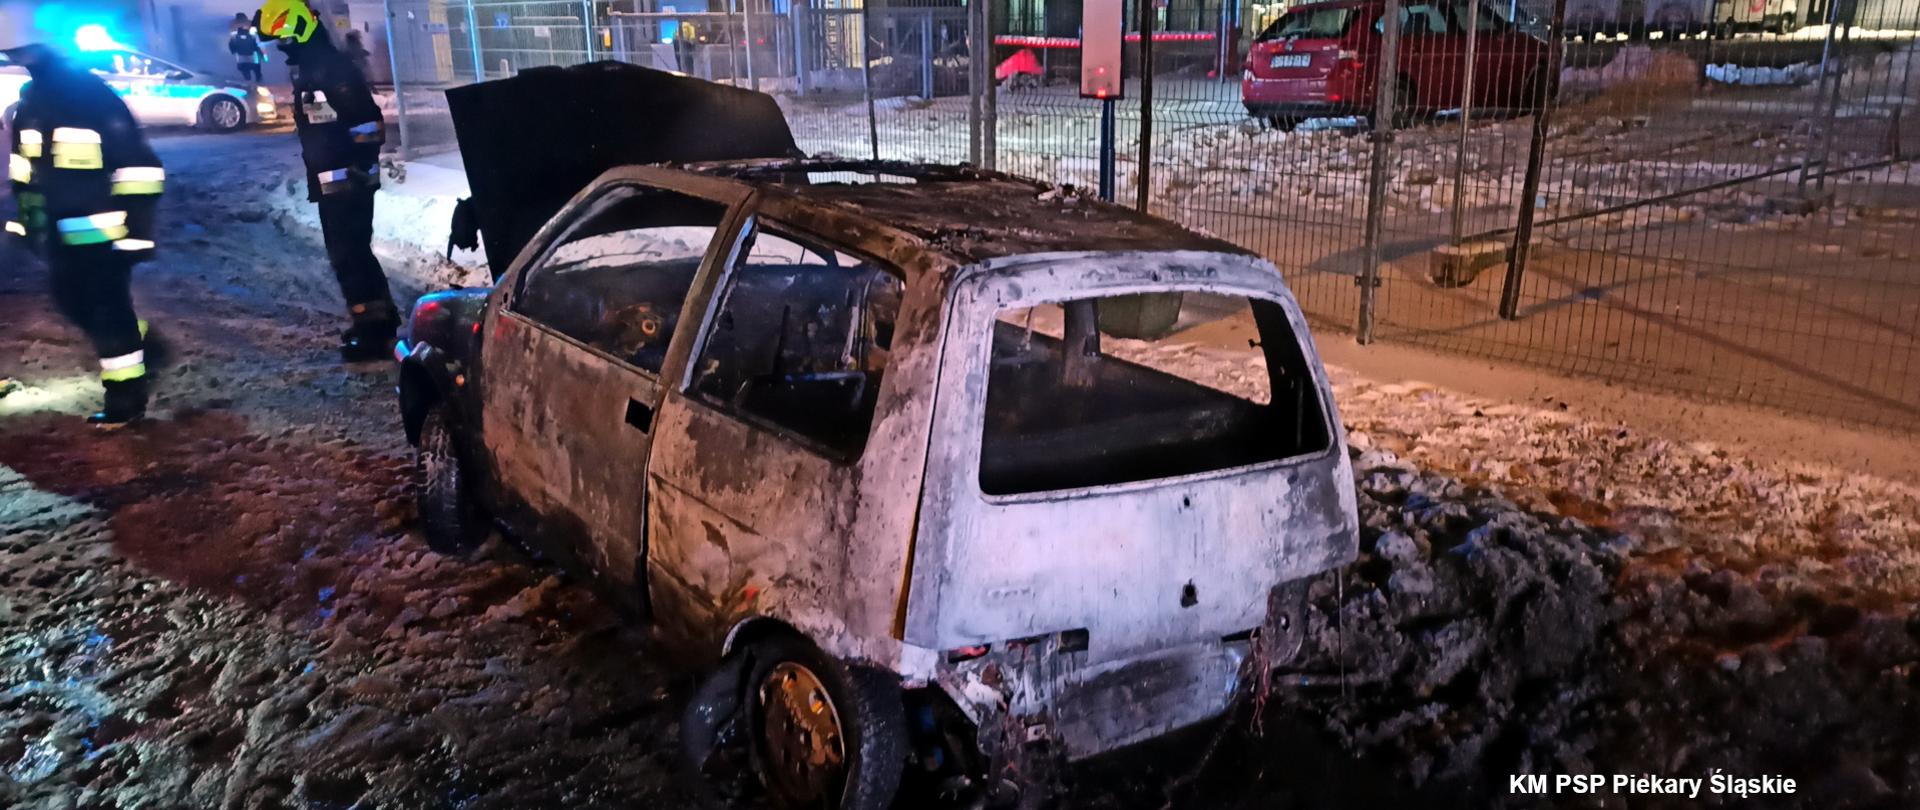 Zdjęcie przedstawia wrak spalonego samochodu marki Fiat Seicento. Obok wraku stoi dwóch strażaków w ubraniach specjalnych.